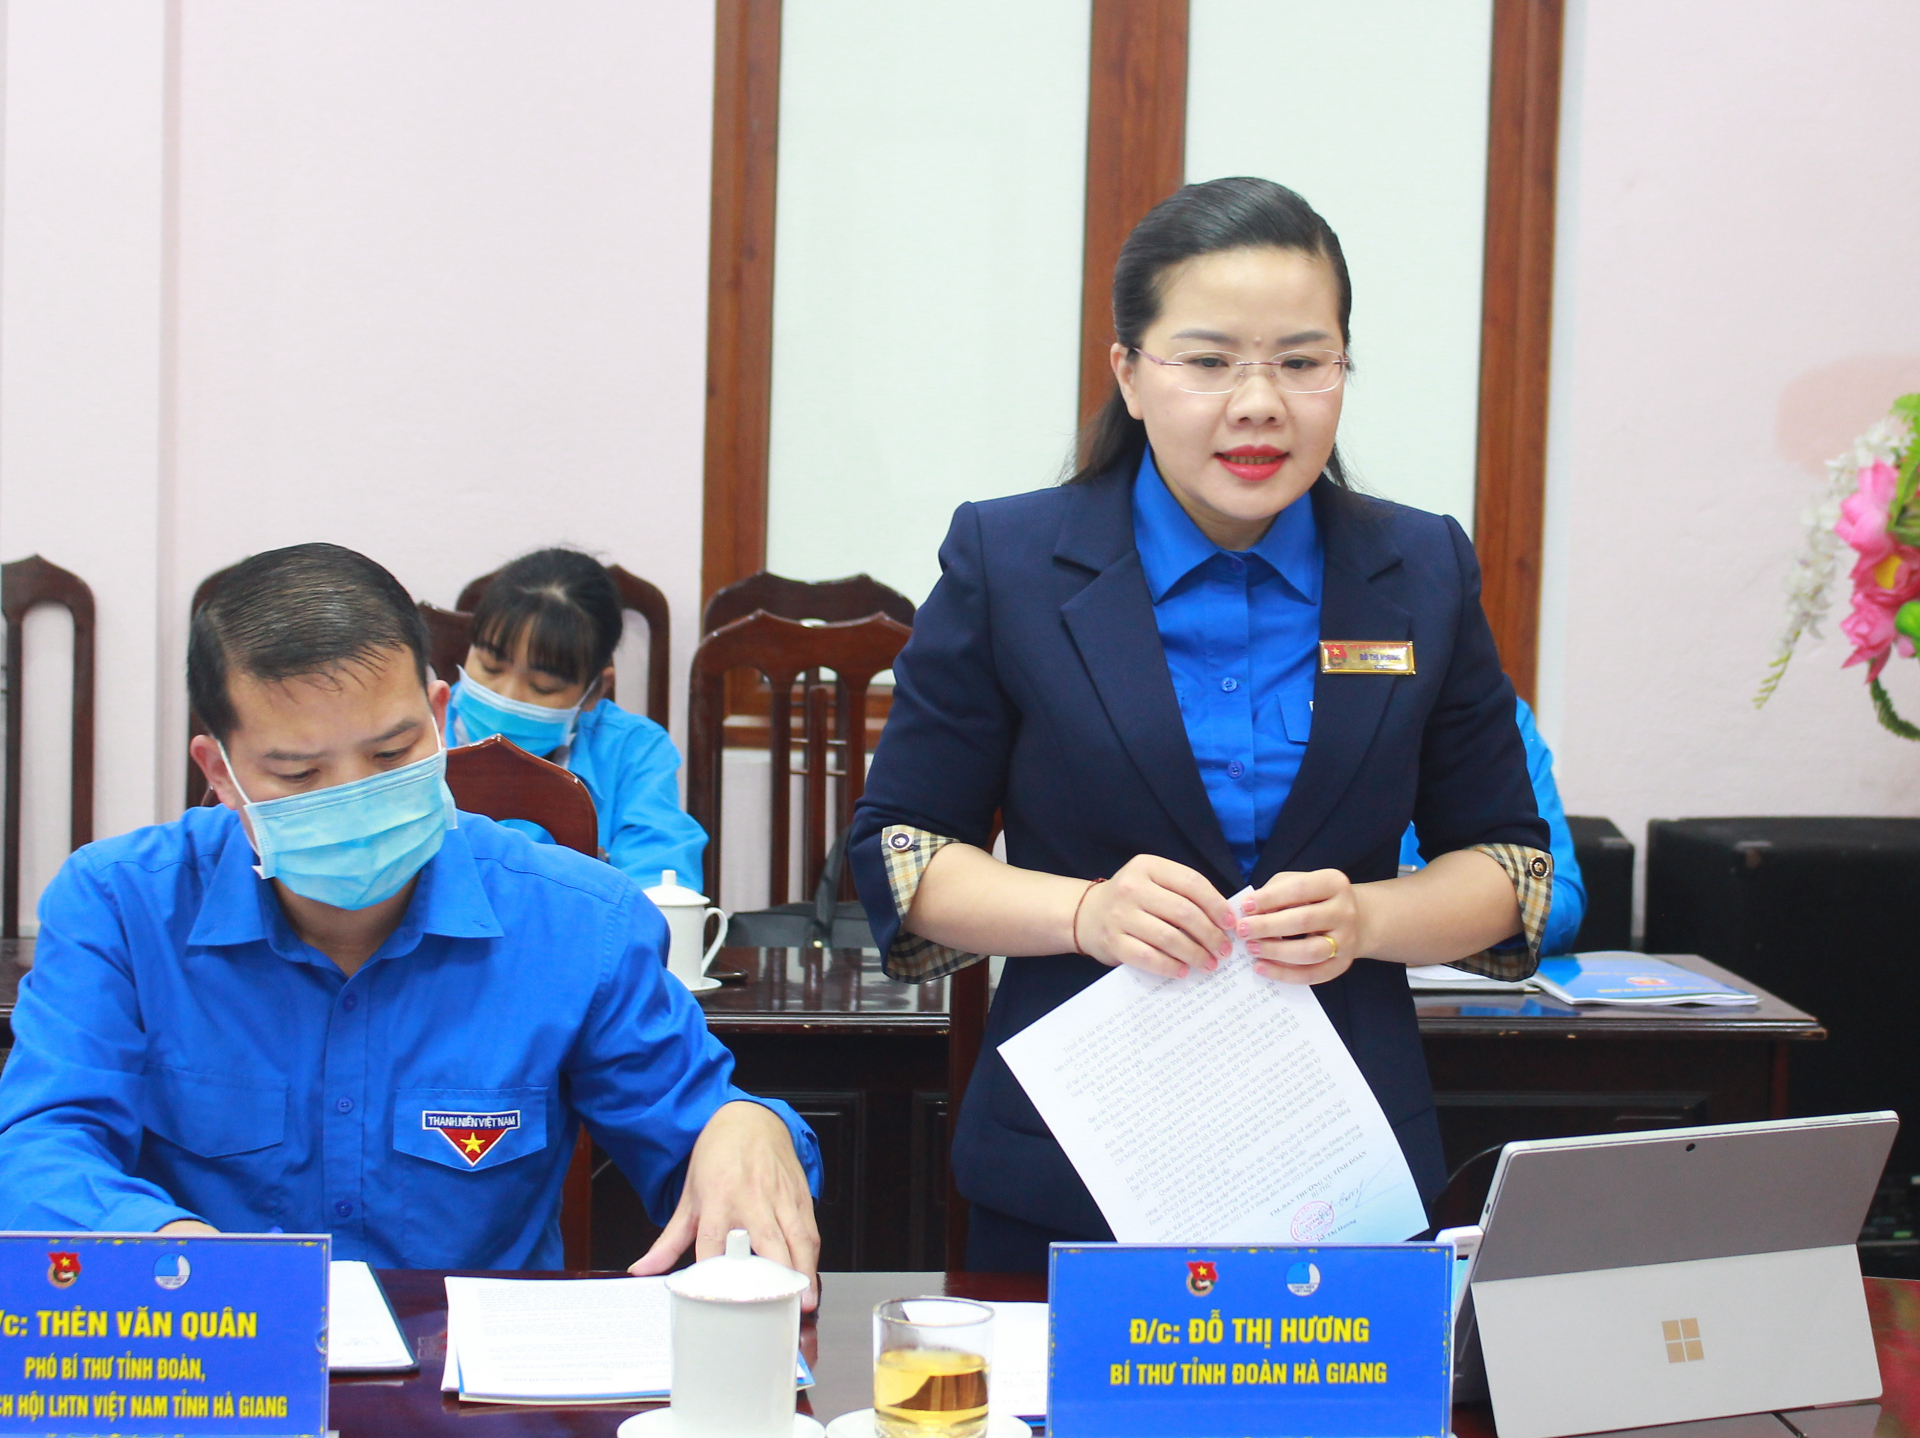 Đồng chí Đỗ Thị Hương, Bí thư Tỉnh đoàn báo cáo kết quả thực hiện nhiệm vụ tại buổi làm việc